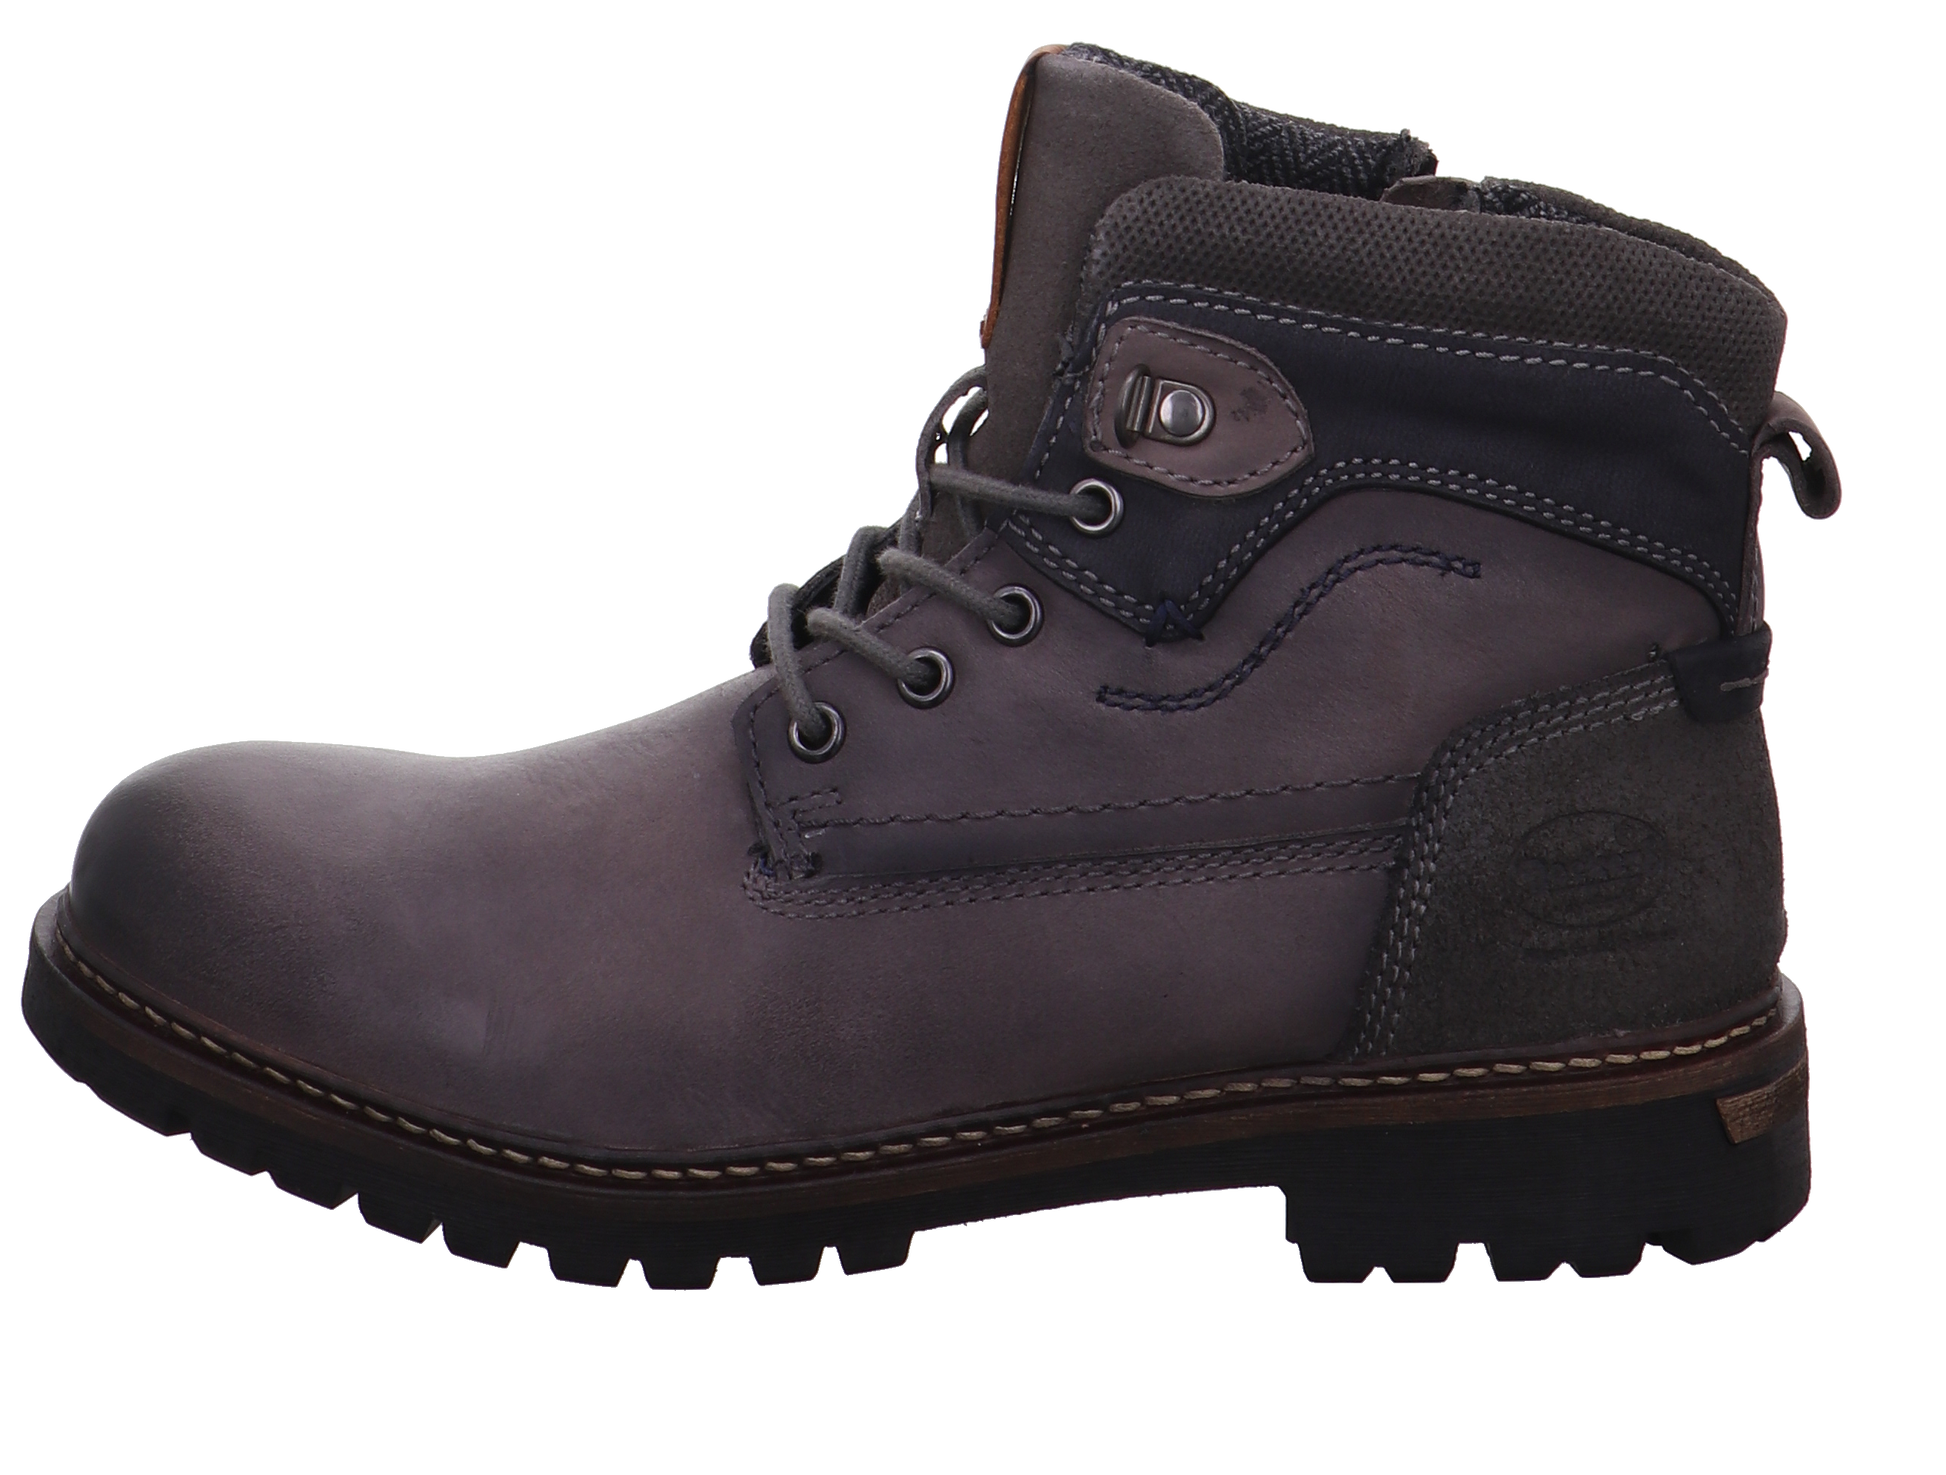 Schuh-Import und Export Gerli Boots & Stiefel  grau Bild1